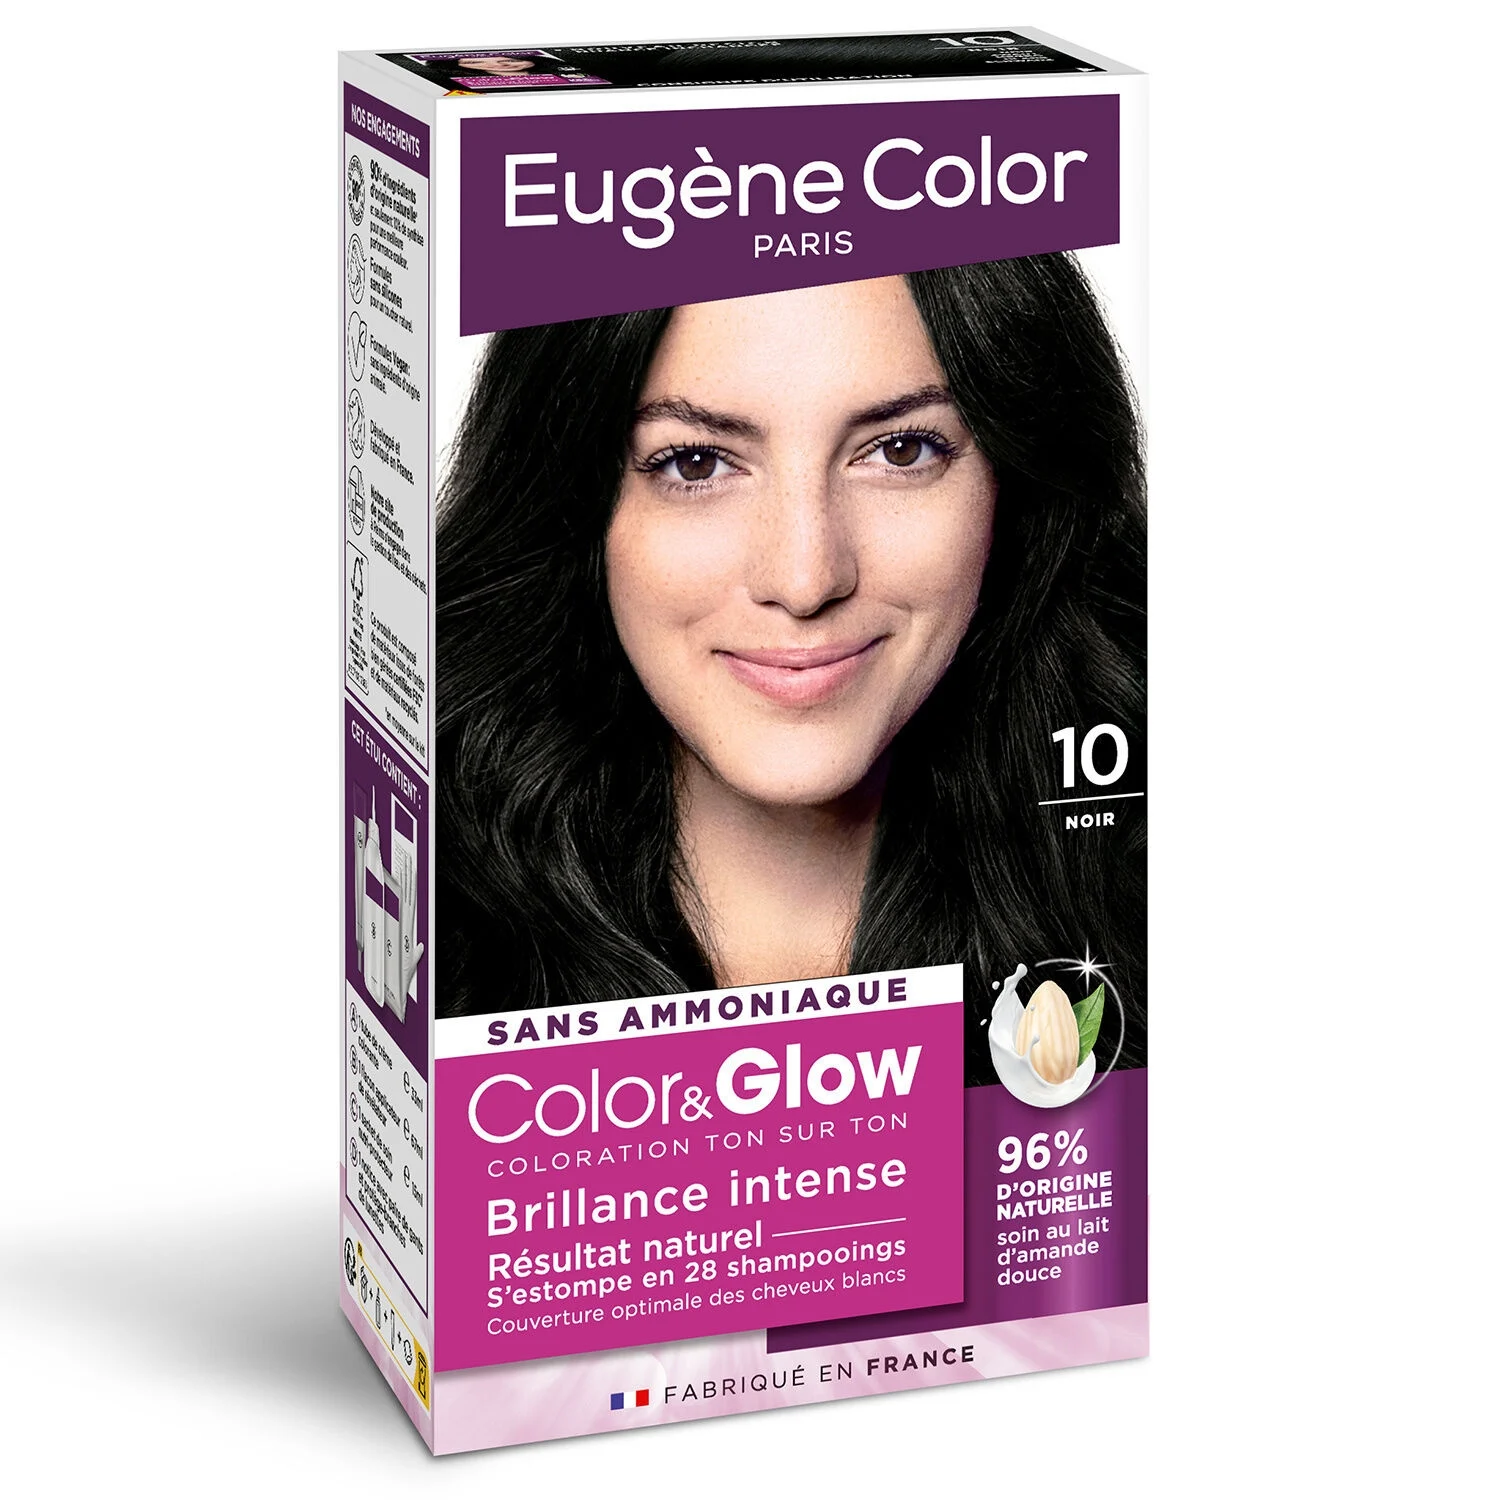 Coloration Capillaire 10 Noir Color&glow - Eugene Color